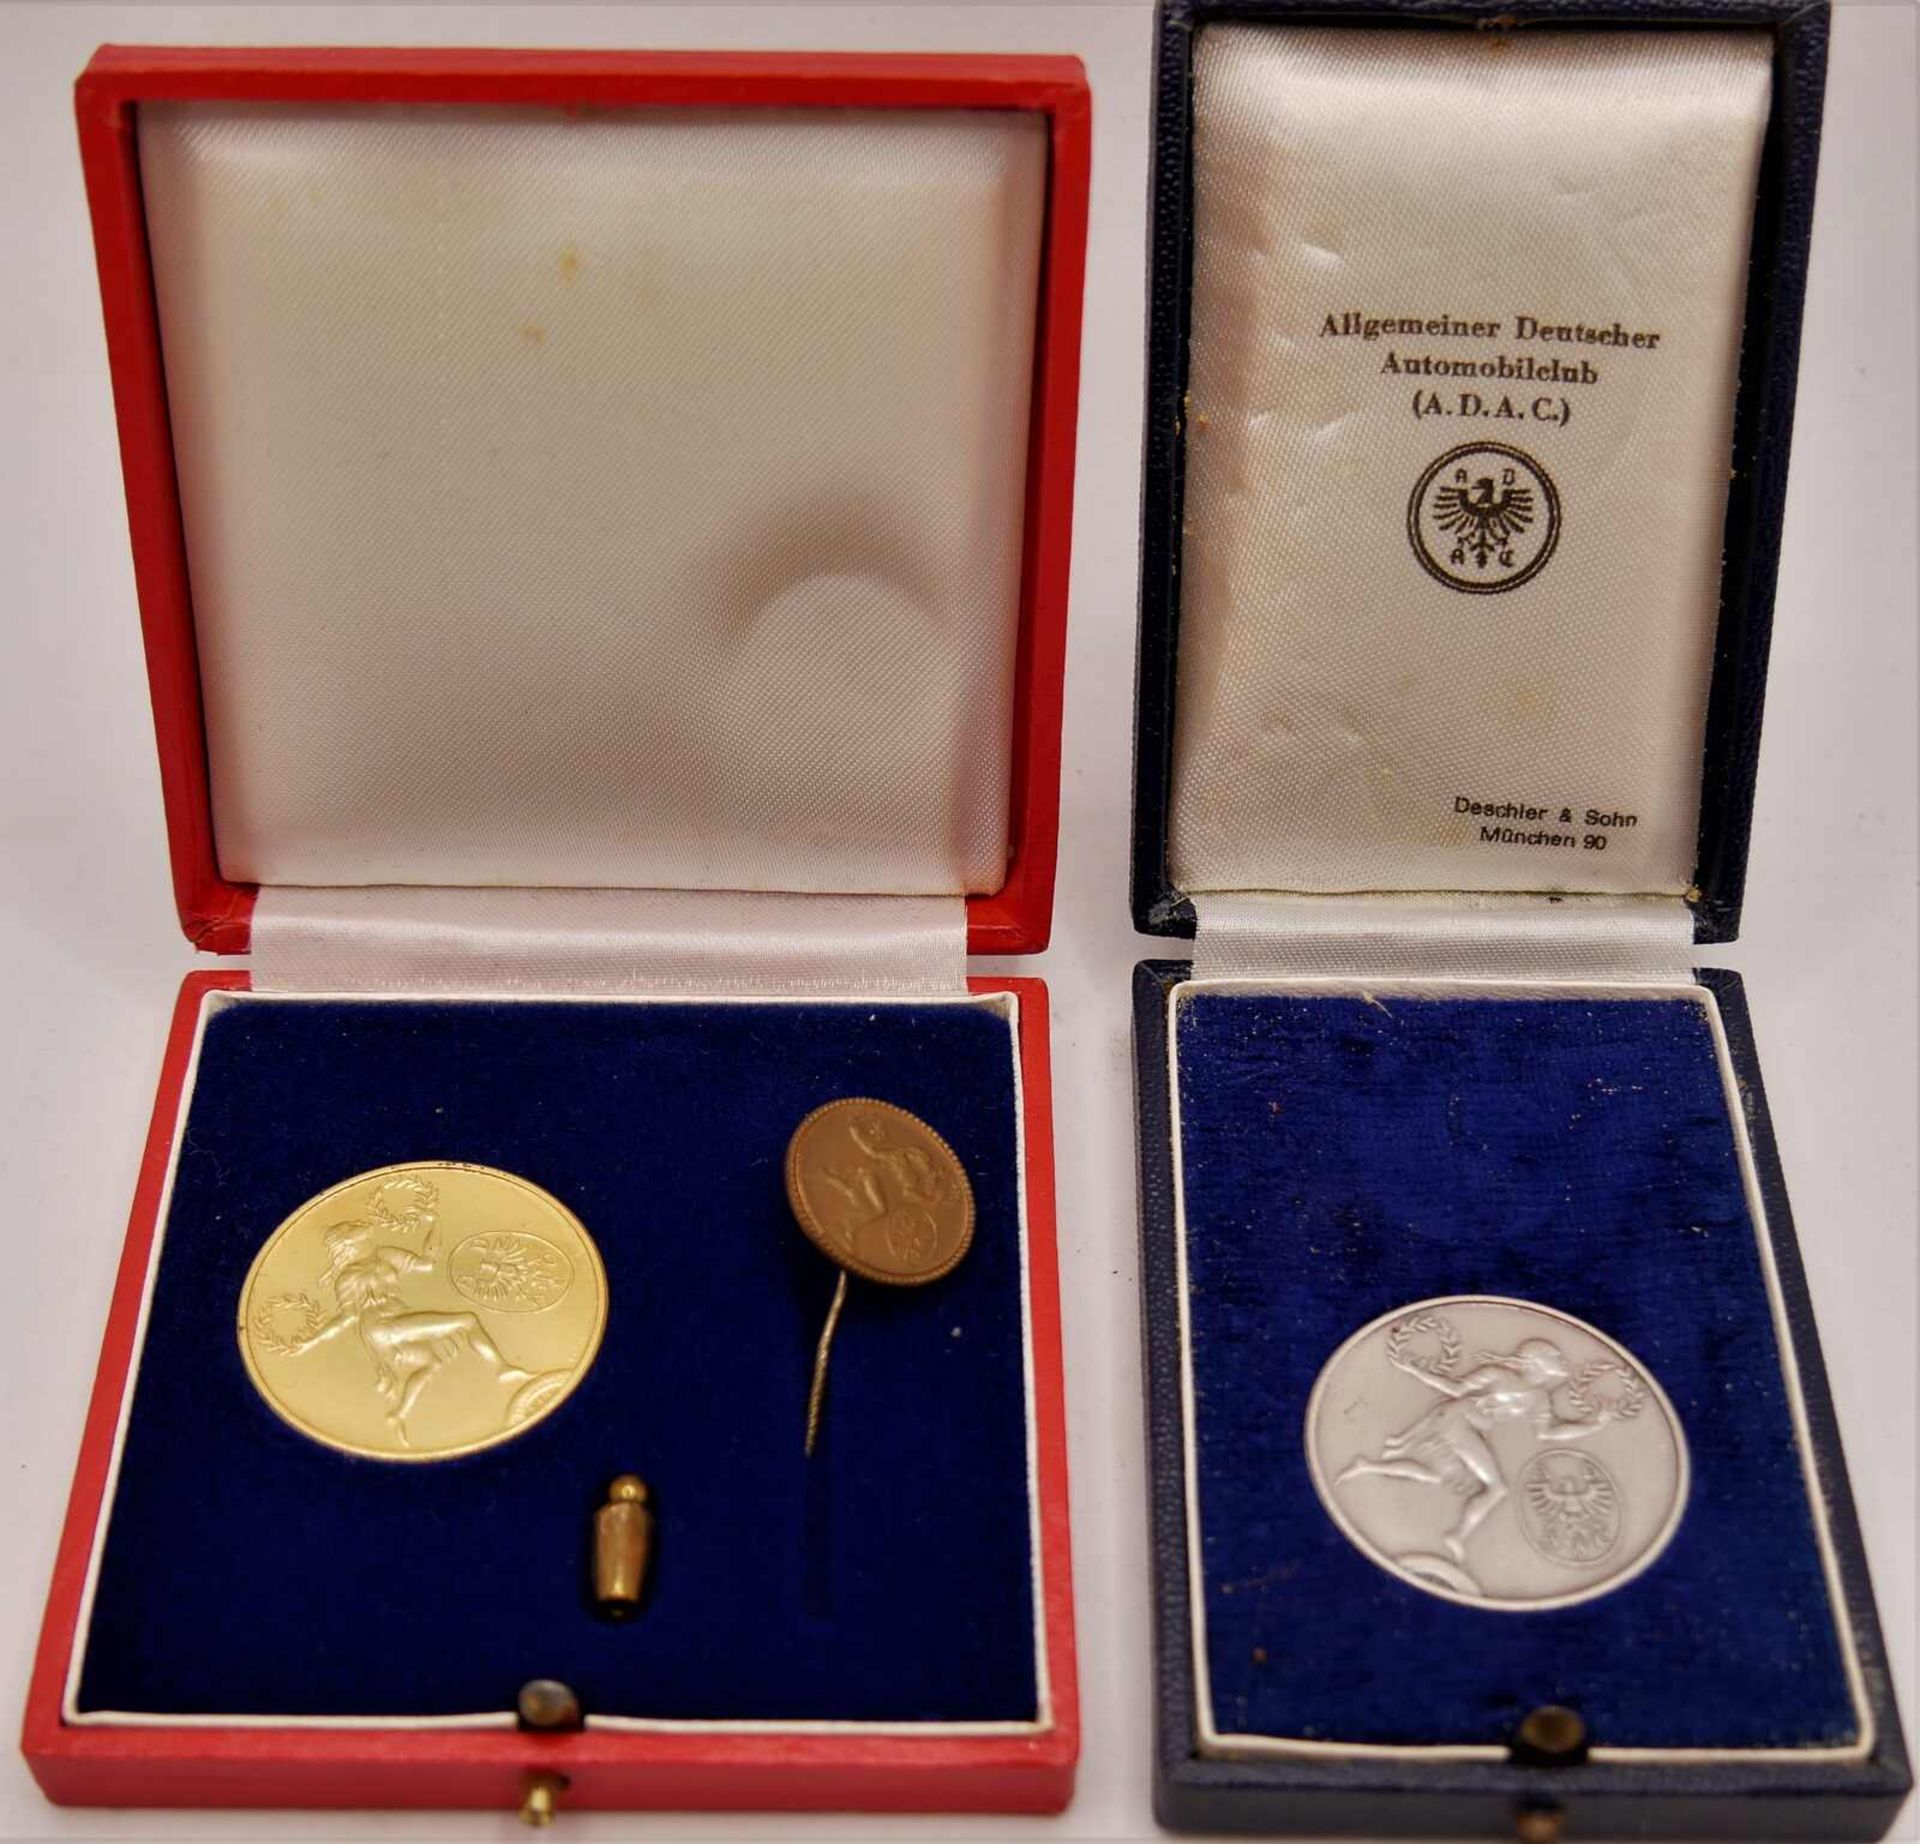 2 ADAC Medaillen, 2x 925er Silber, 1x vergoldet. Beide im Original Etui. Guter Zustand.